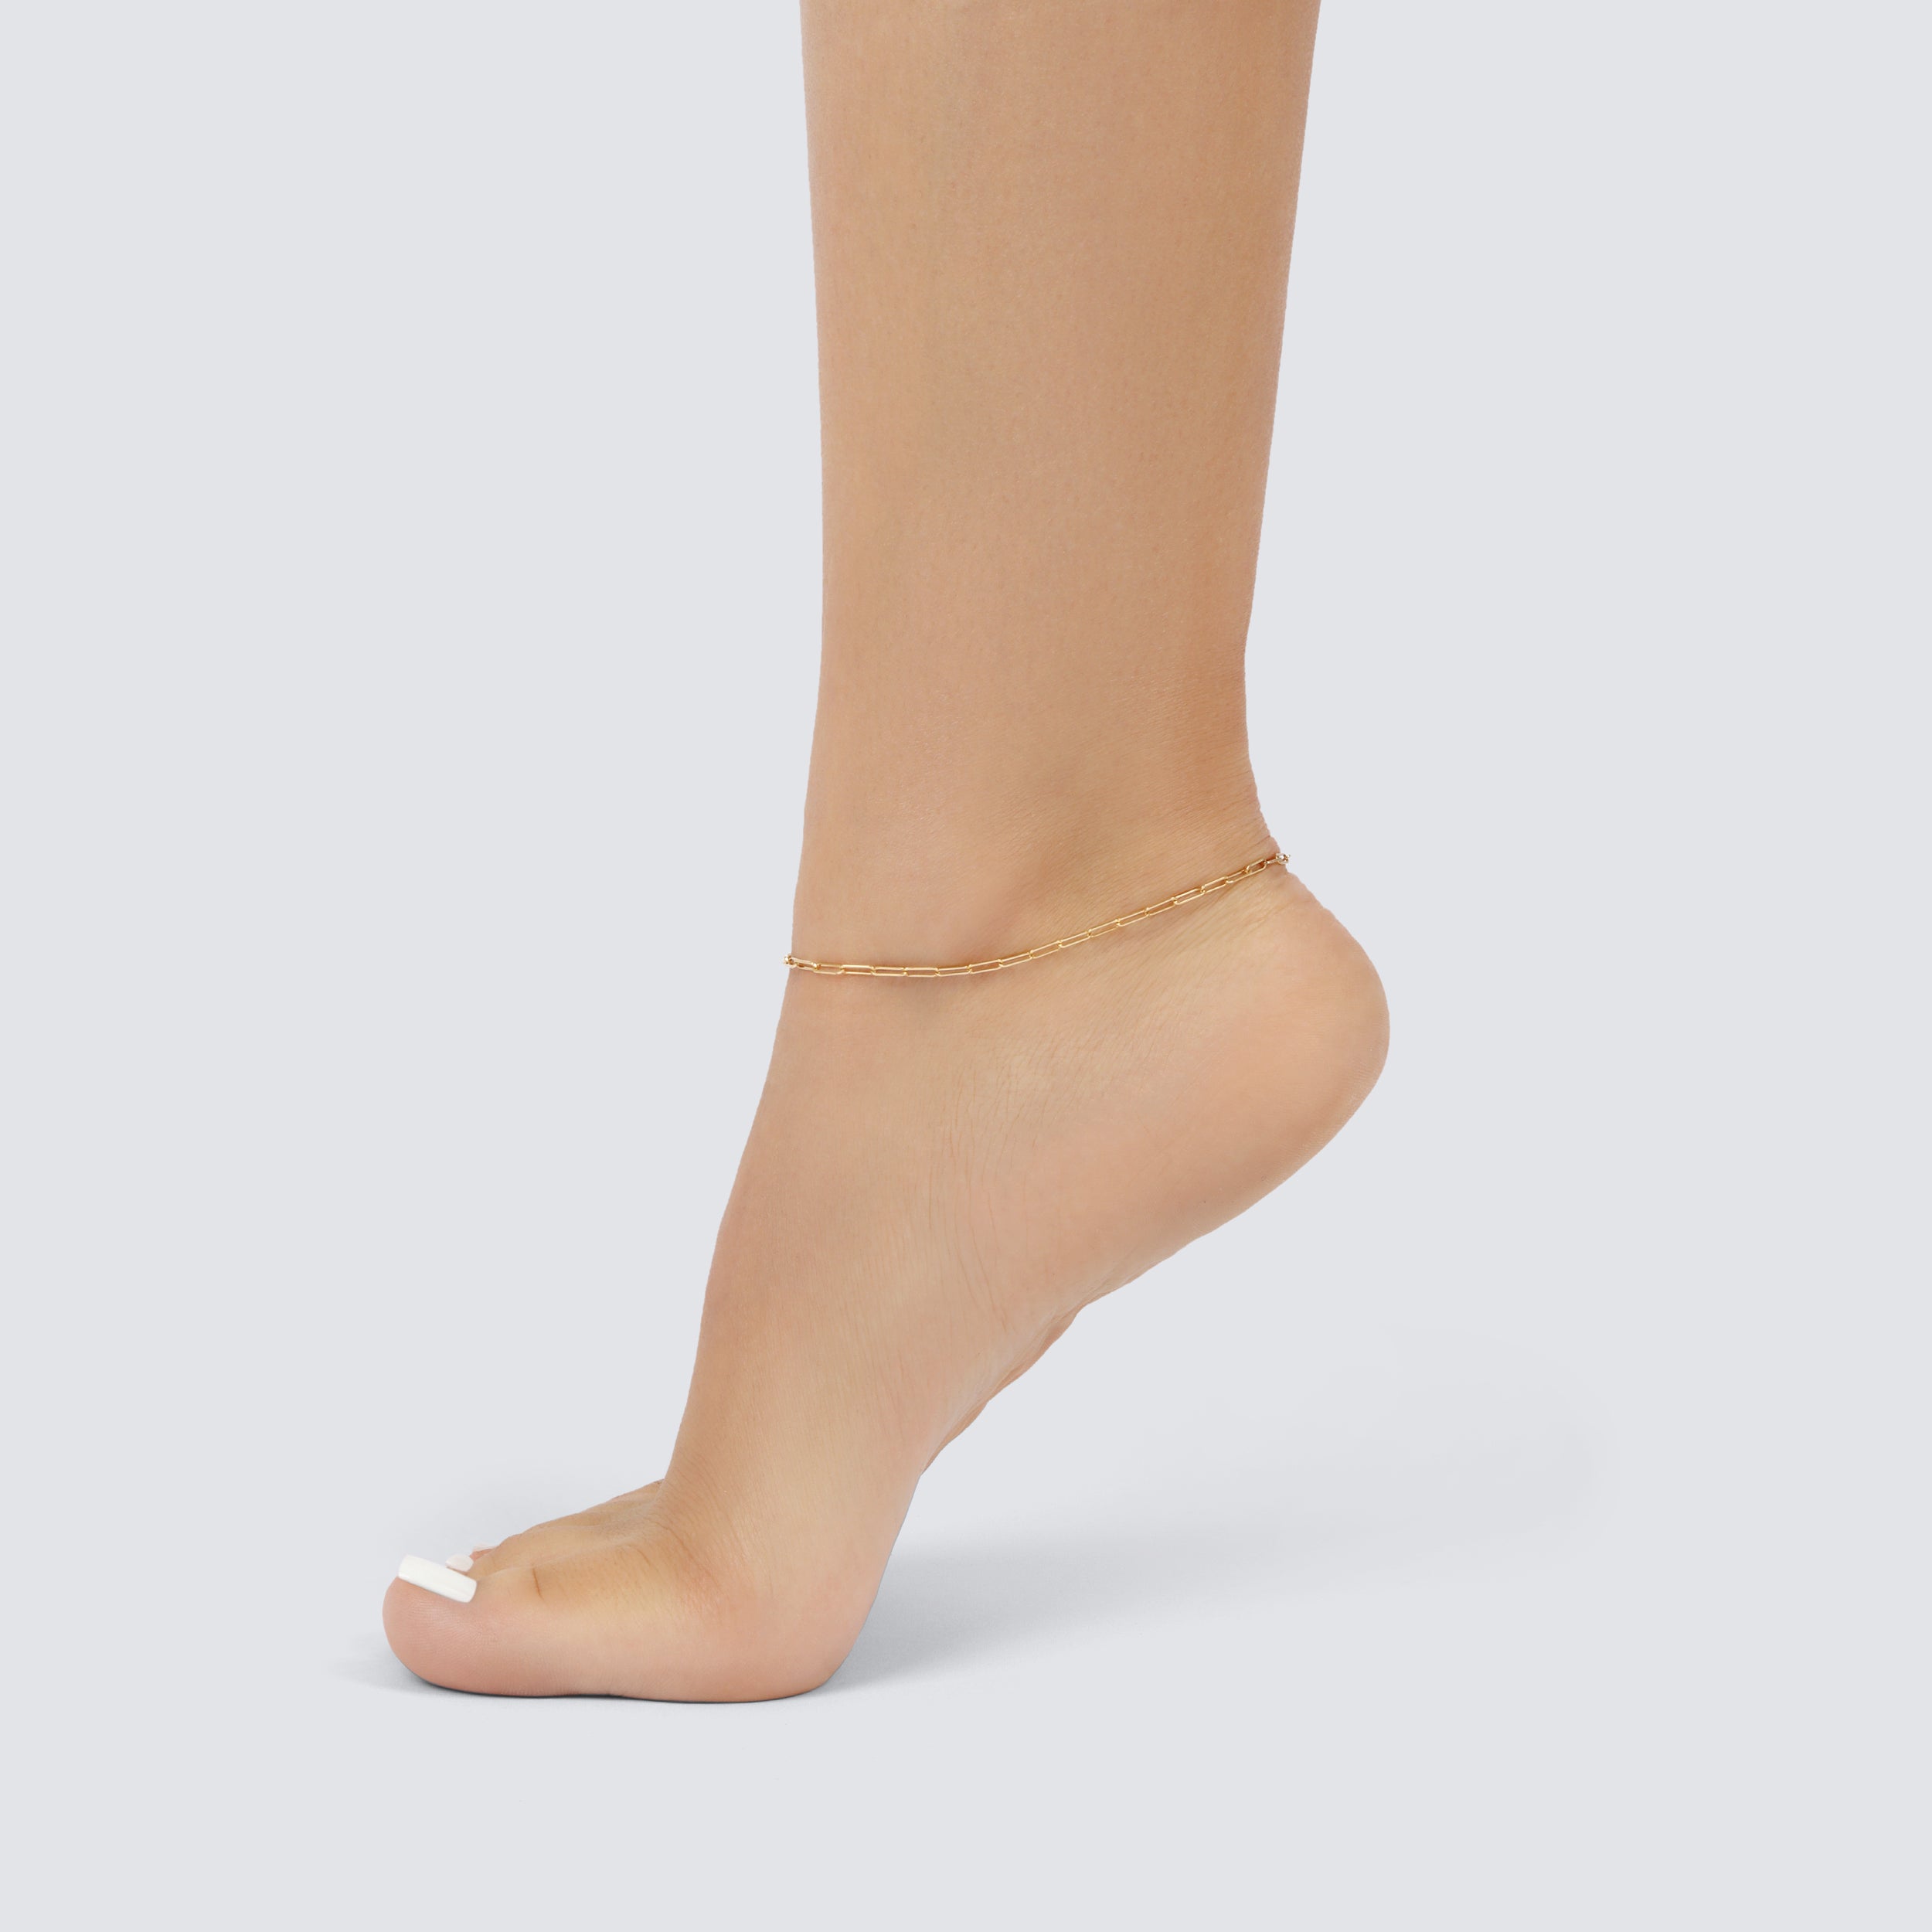 Delicate Paper Clip Anklet